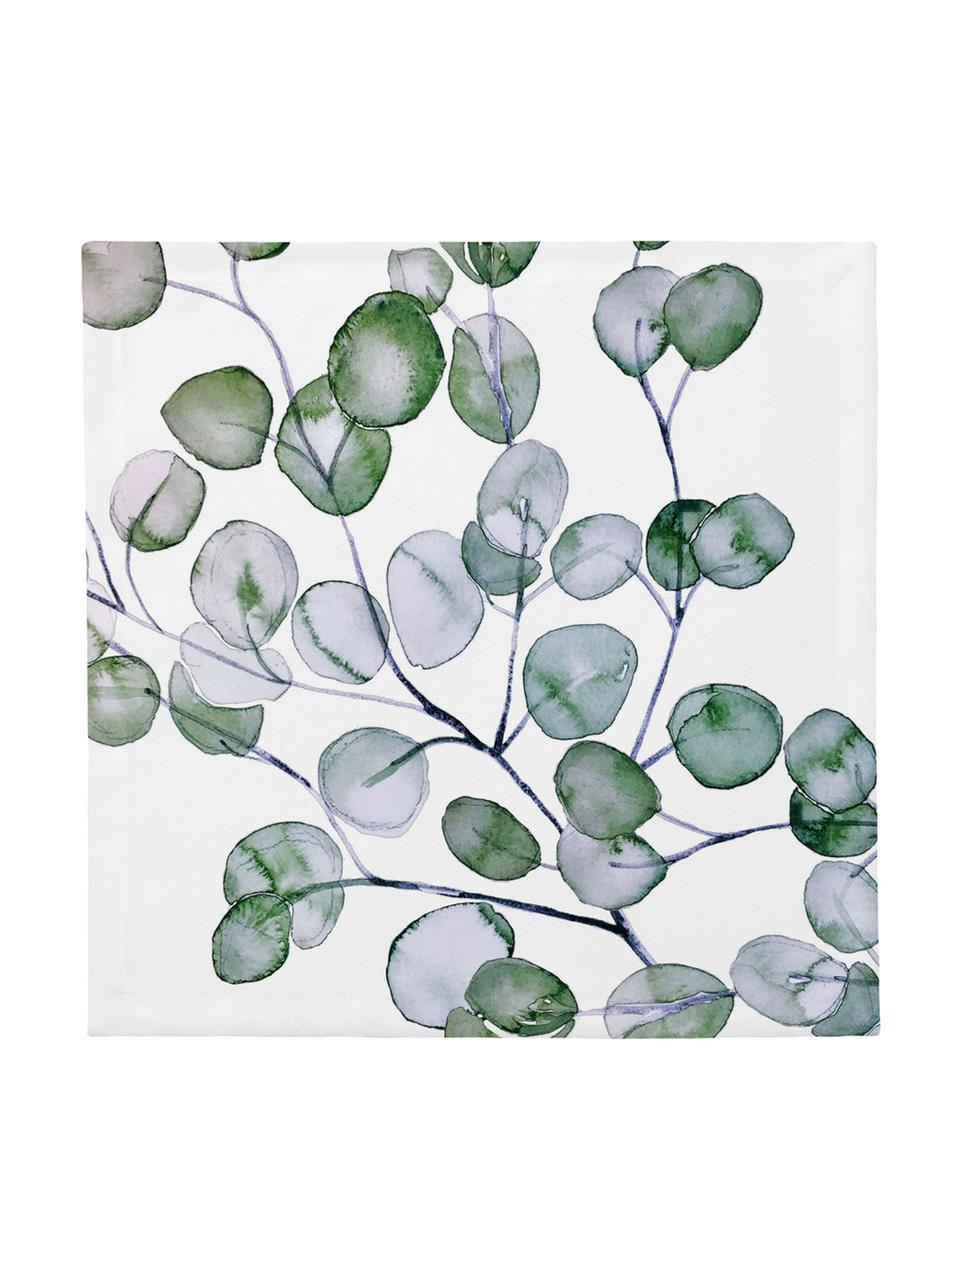 Baumwoll-Servietten Eucalyptus, 4 Stück, Baumwolle, Weiss, Grün, Grau, 40 x 40 cm